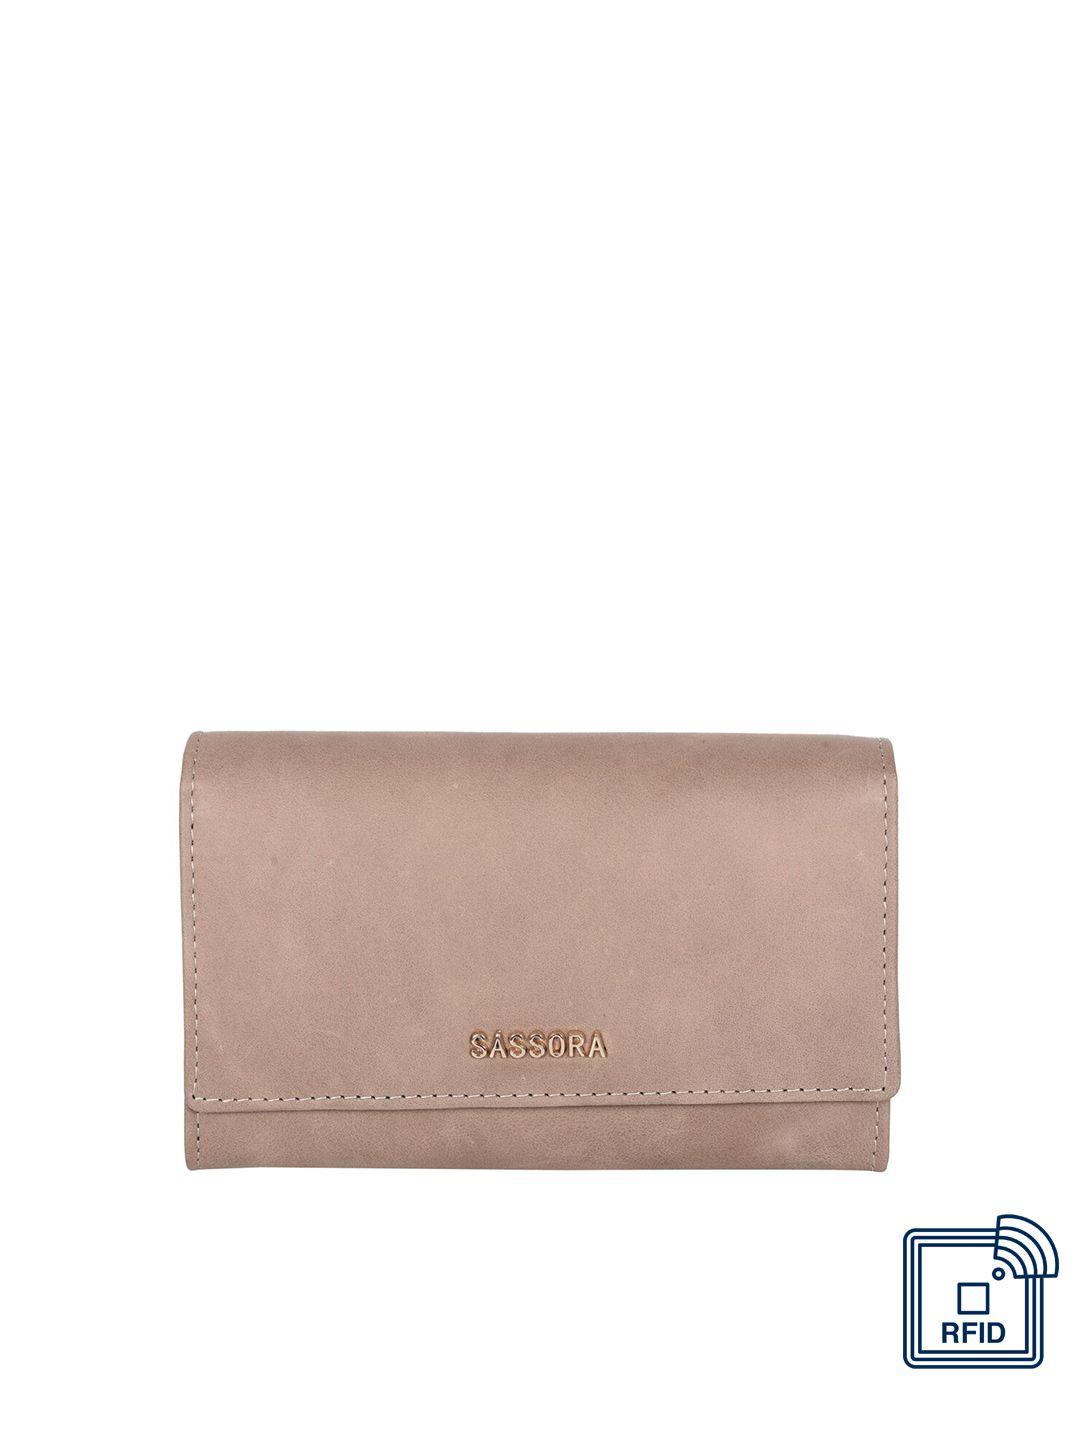 sassora women leather two fold wallet